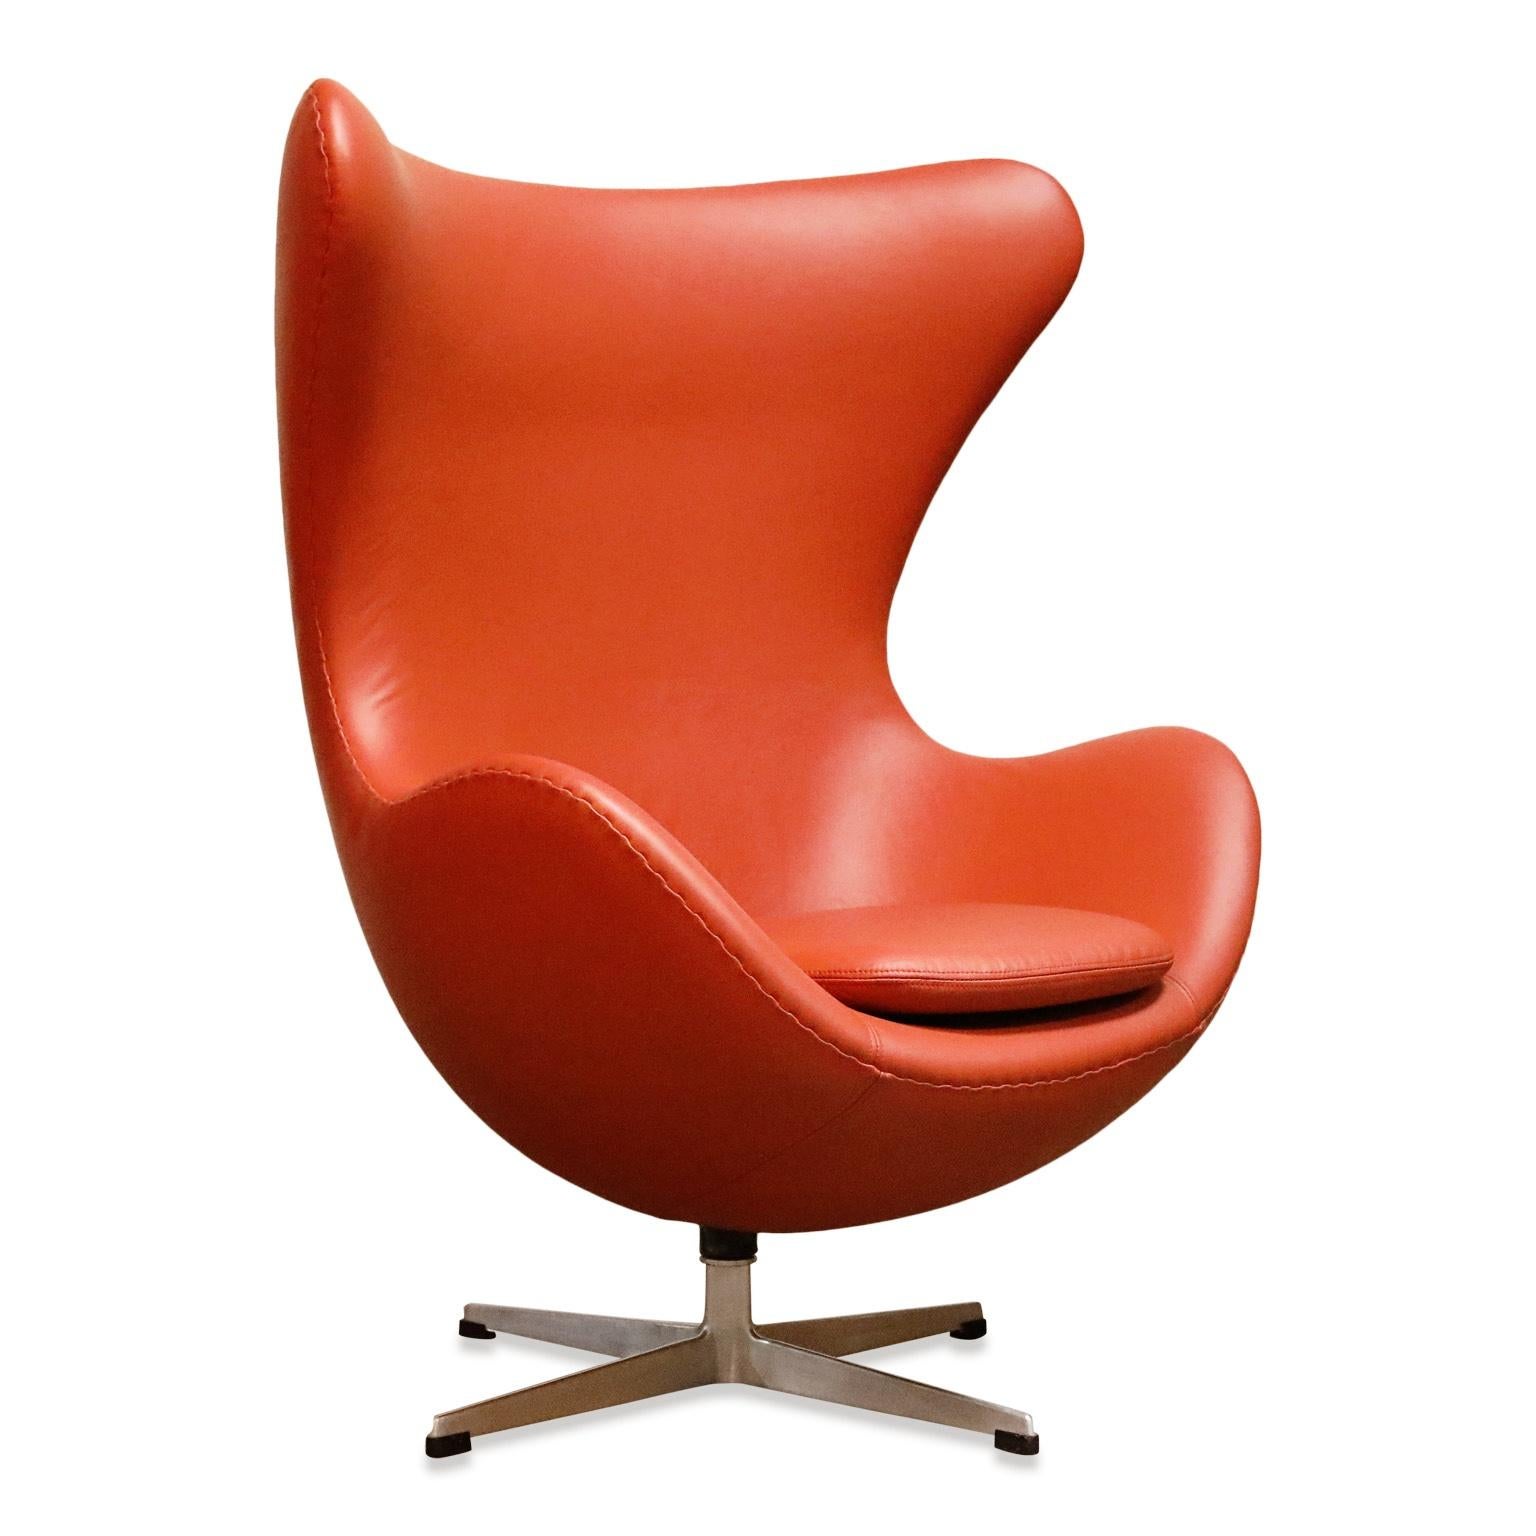 Mid-20th Century Egg Chair in Burnt Orange Leather, Arne Jacobsen for Fritz Hansen, Signed 1963